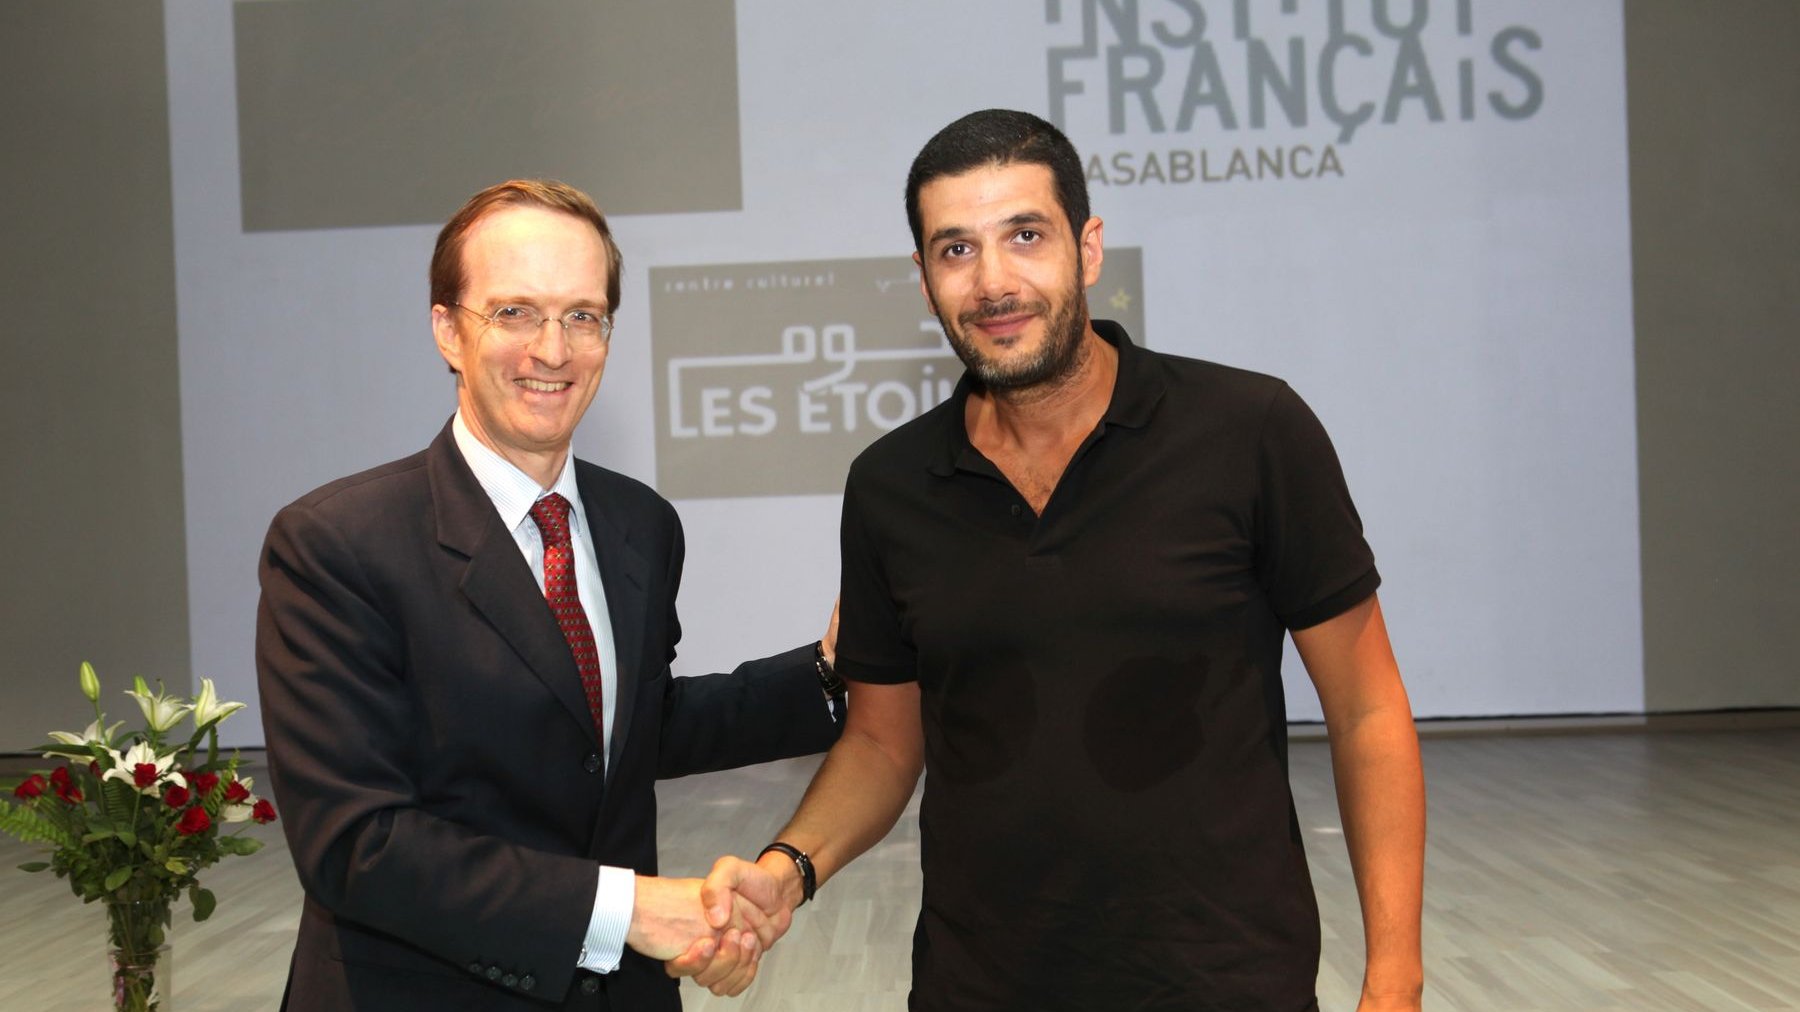 L'ambassadeur de France au Maroc et le président de la fondation Ali Zaouaont achevé de sceller leur pacte de coopération par une franche poignée de main.  
